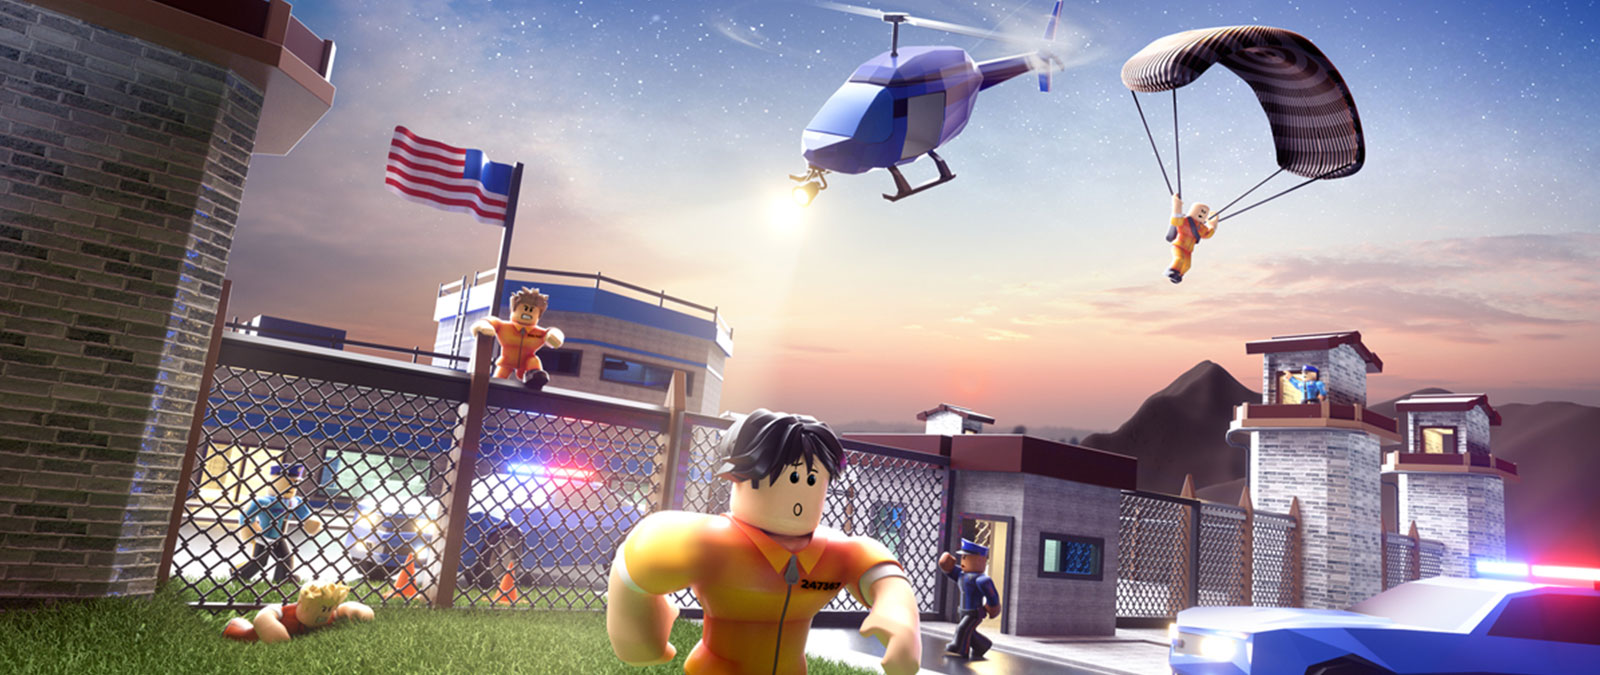 Personagens do Roblox escapando da prisão enquanto a polícia os persegue no jogo Jailbreak